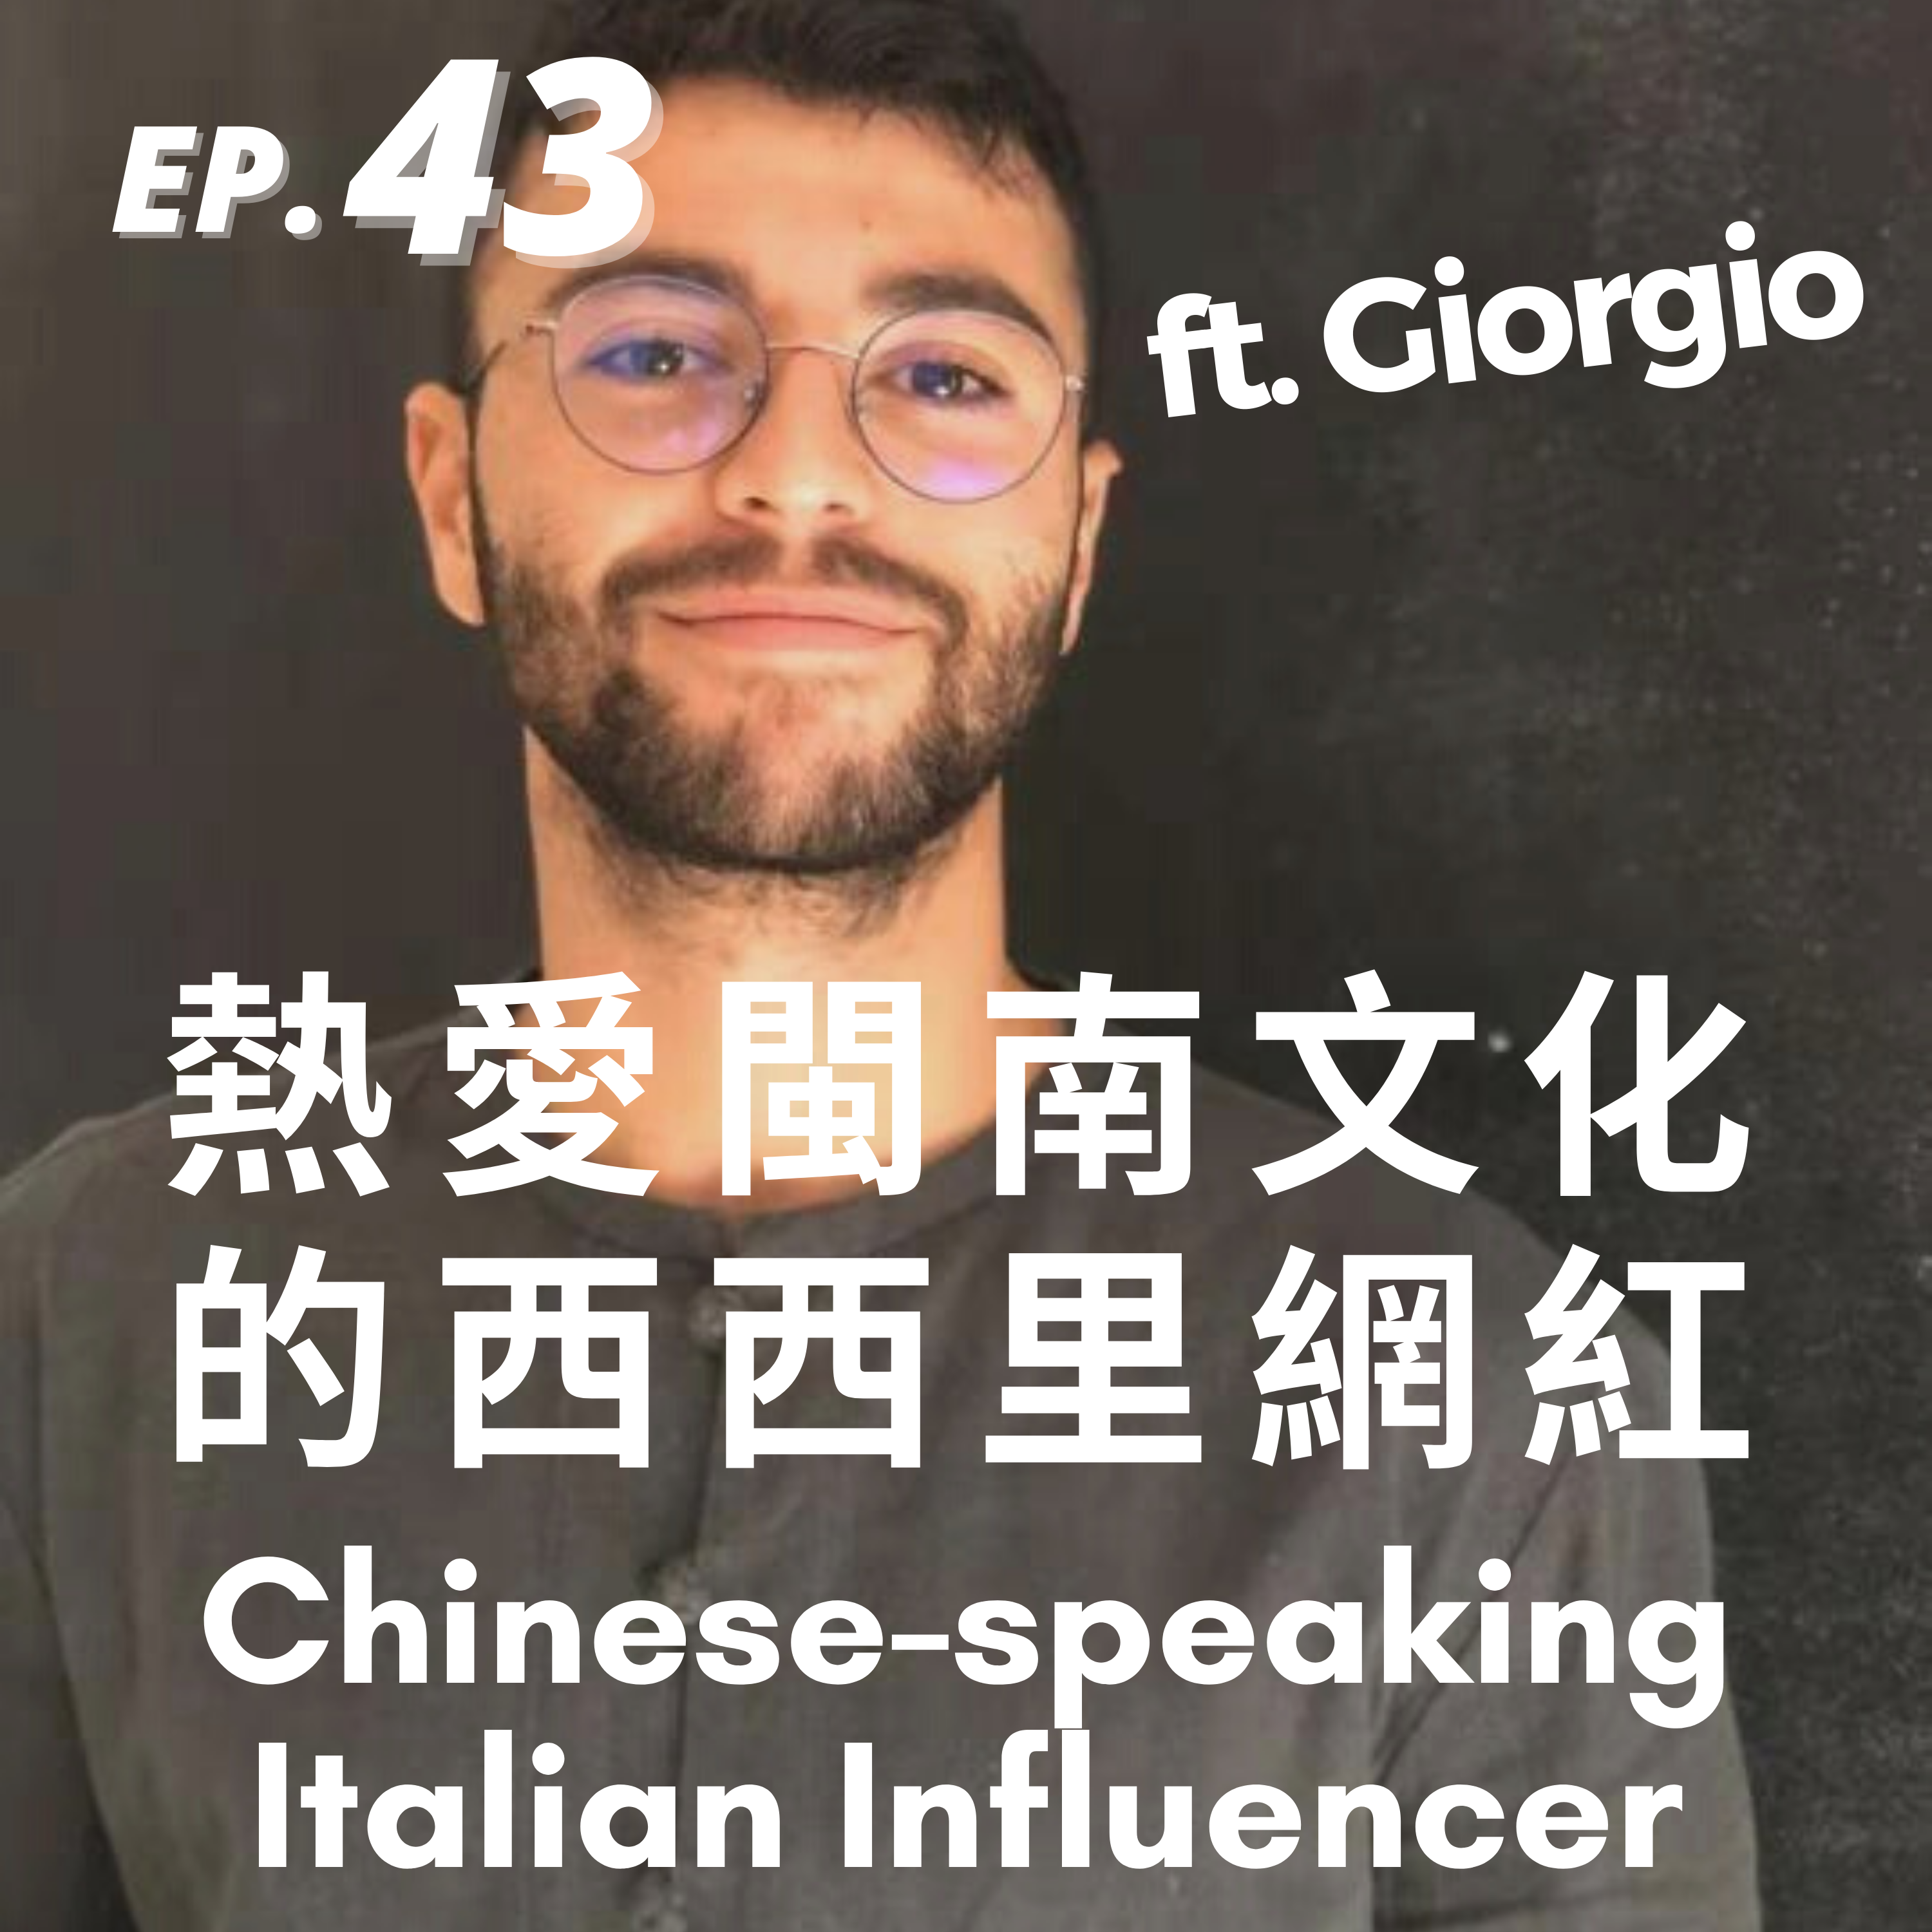 43. 熱愛閩南文化的義大利網紅 Chinese-speaking Italian Influencer ft. Giorgio